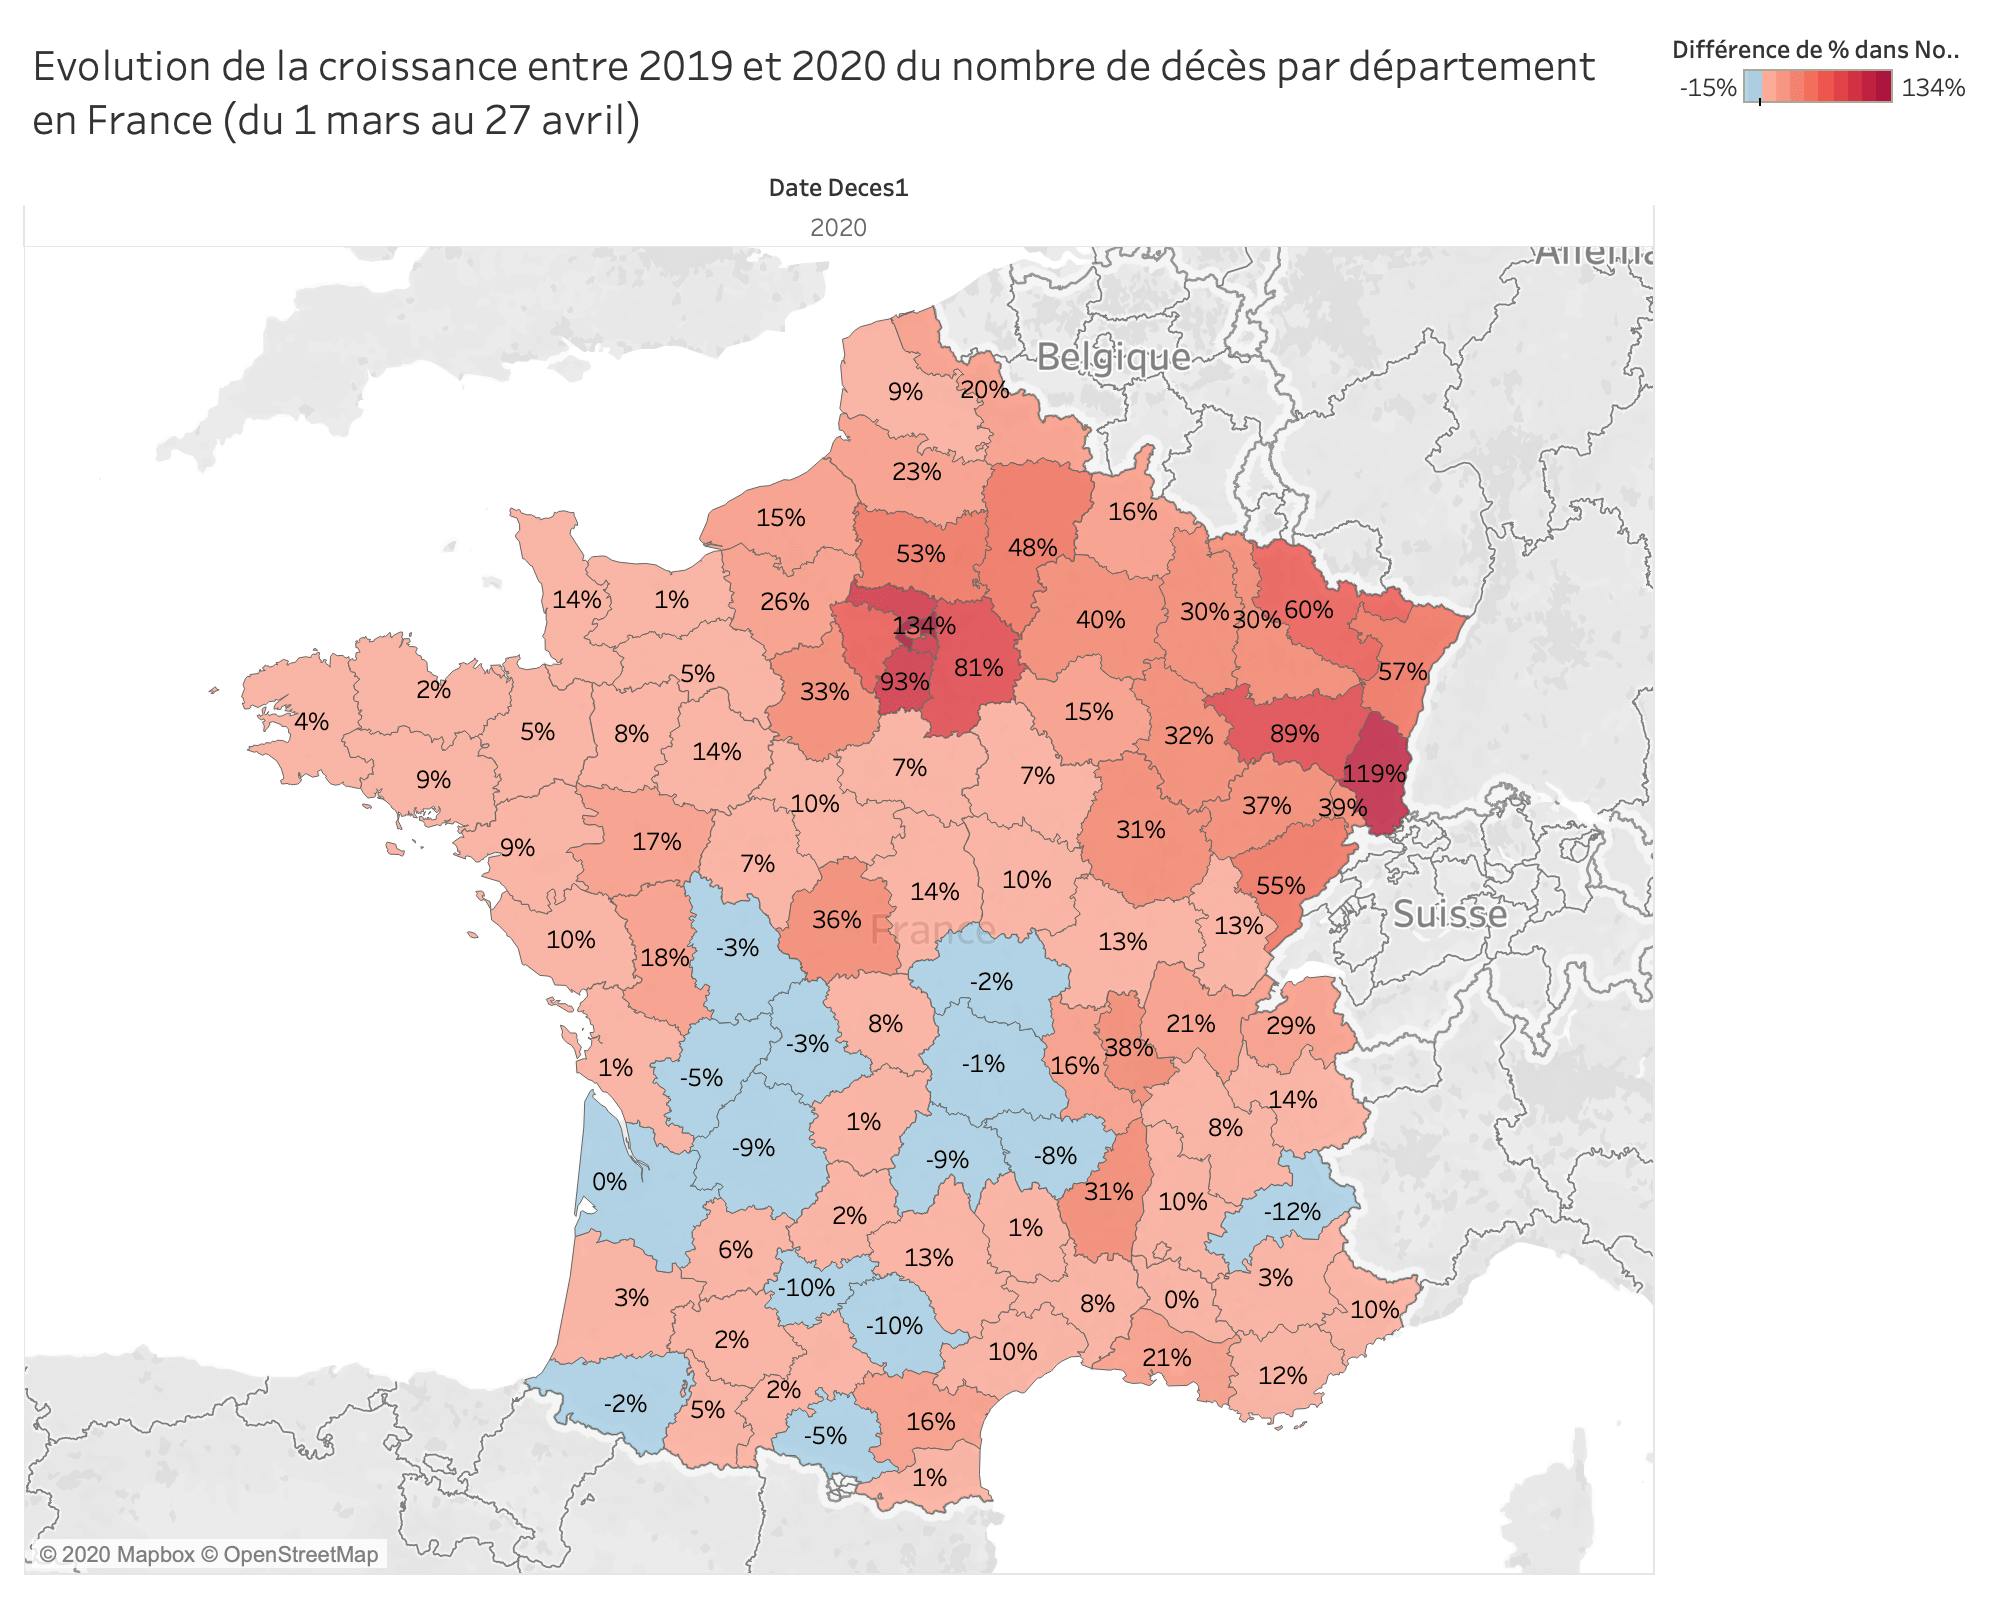 Evolution de la croissance entre 2019 et 2020 du nombre de décès par département en France (du 1 mars au 27 avril)